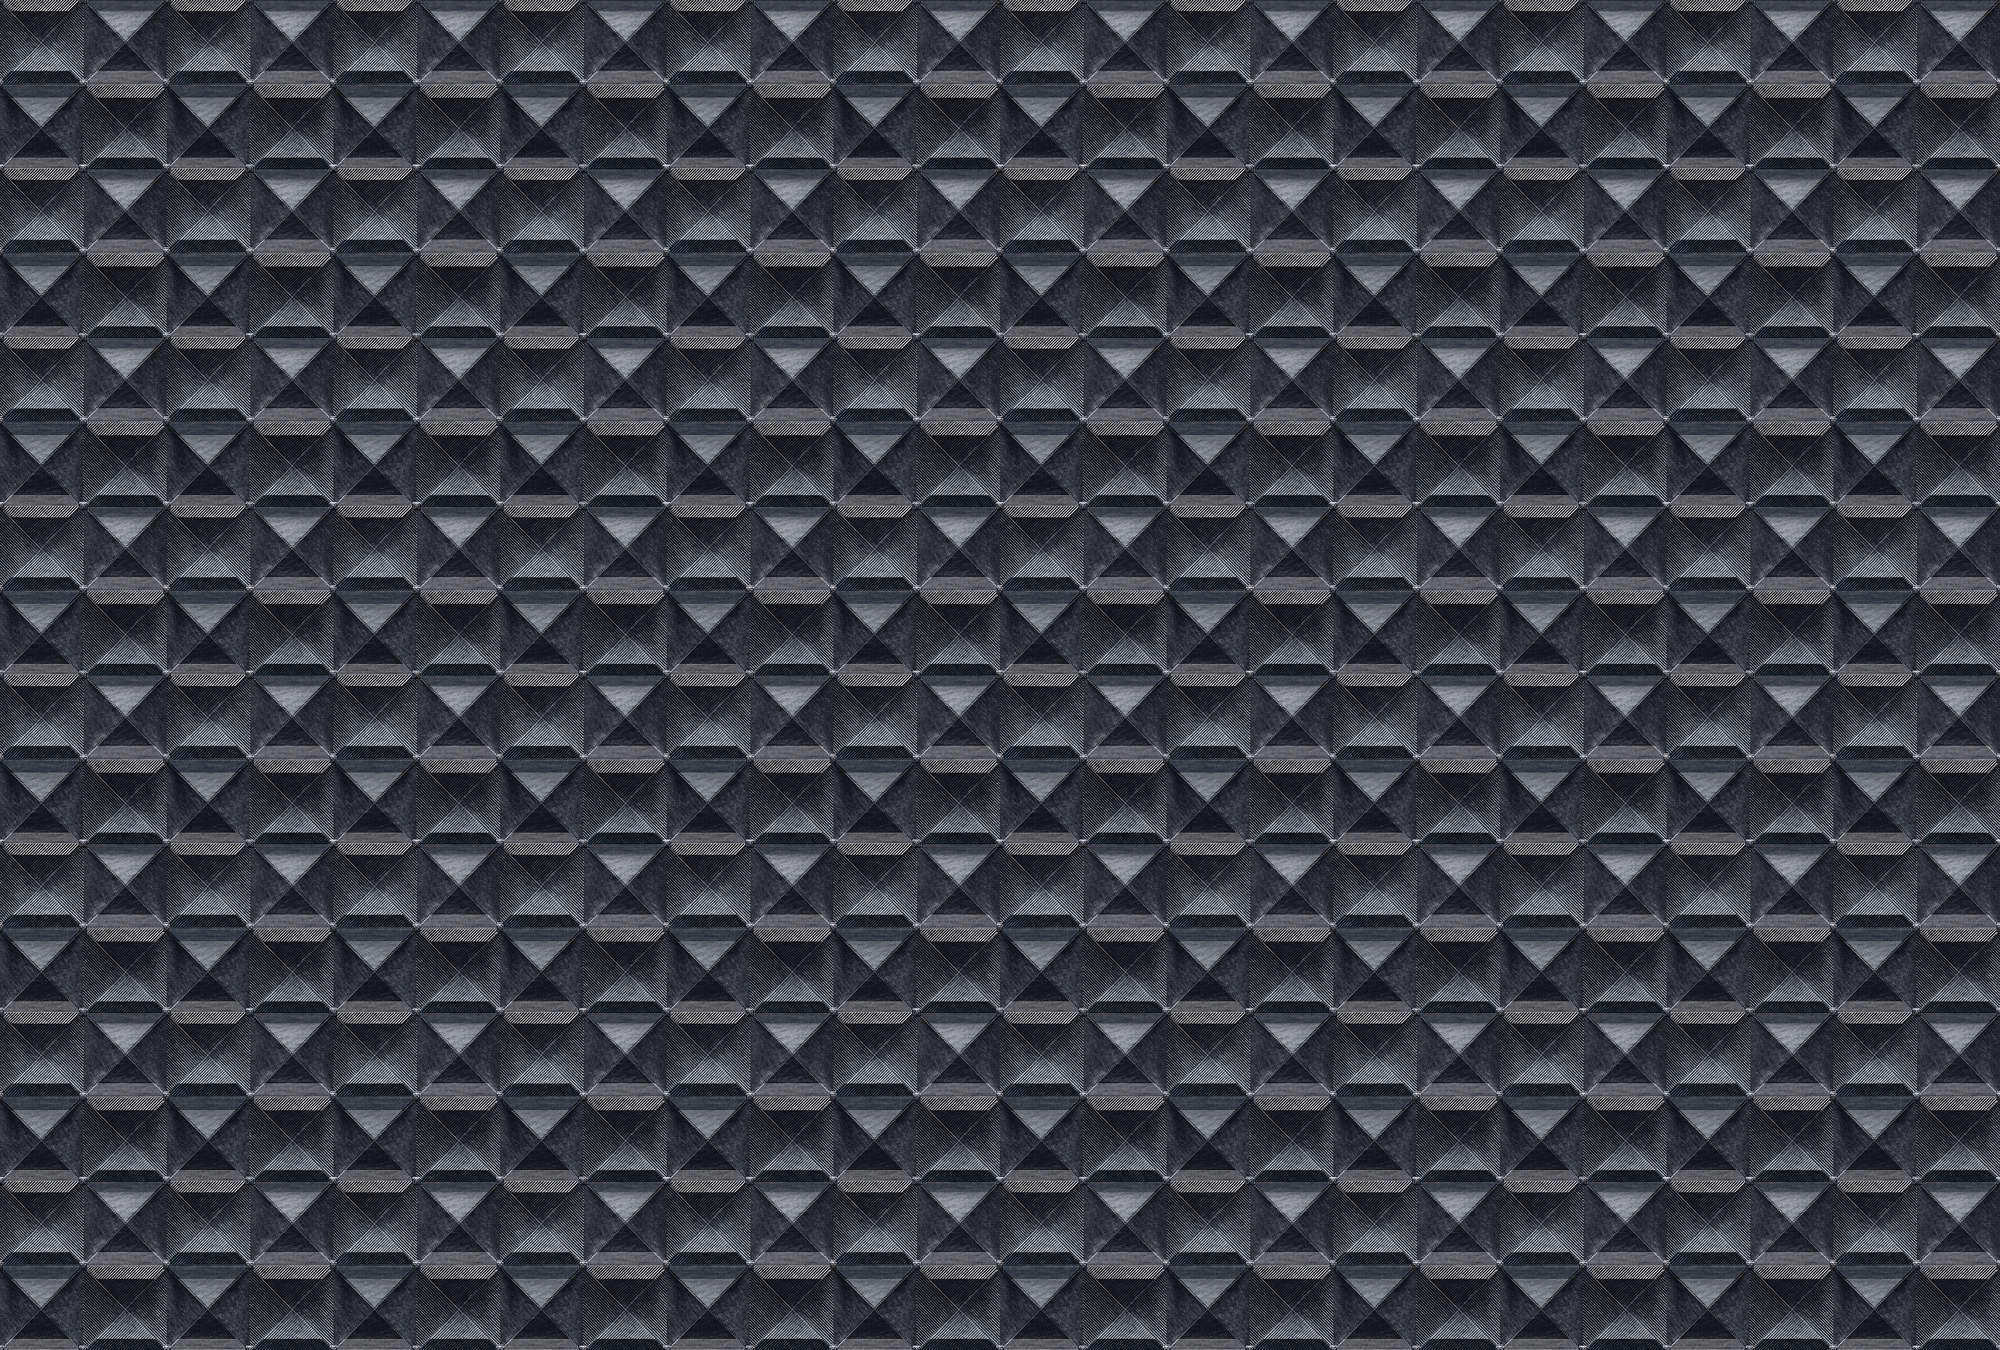             The edge 2 - Carta da parati 3D con disegno a losanghe in metallo - blu, nero | vello liscio perlato
        